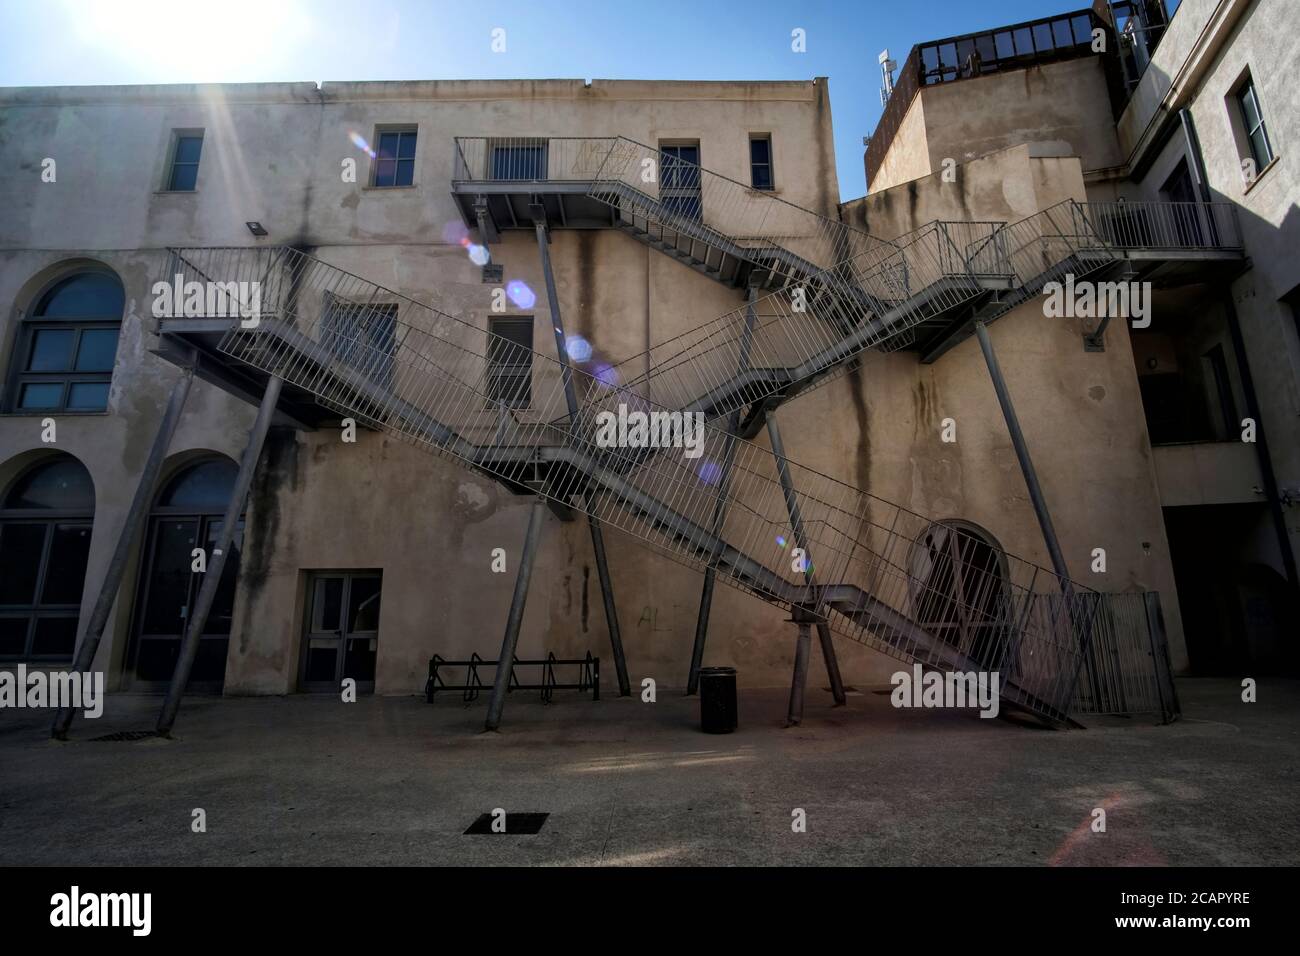 Vue sur les escaliers modernes d'urgence sur l'ancien bâtiment du département d'architecture de l'université à Alghero, en Italie Banque D'Images